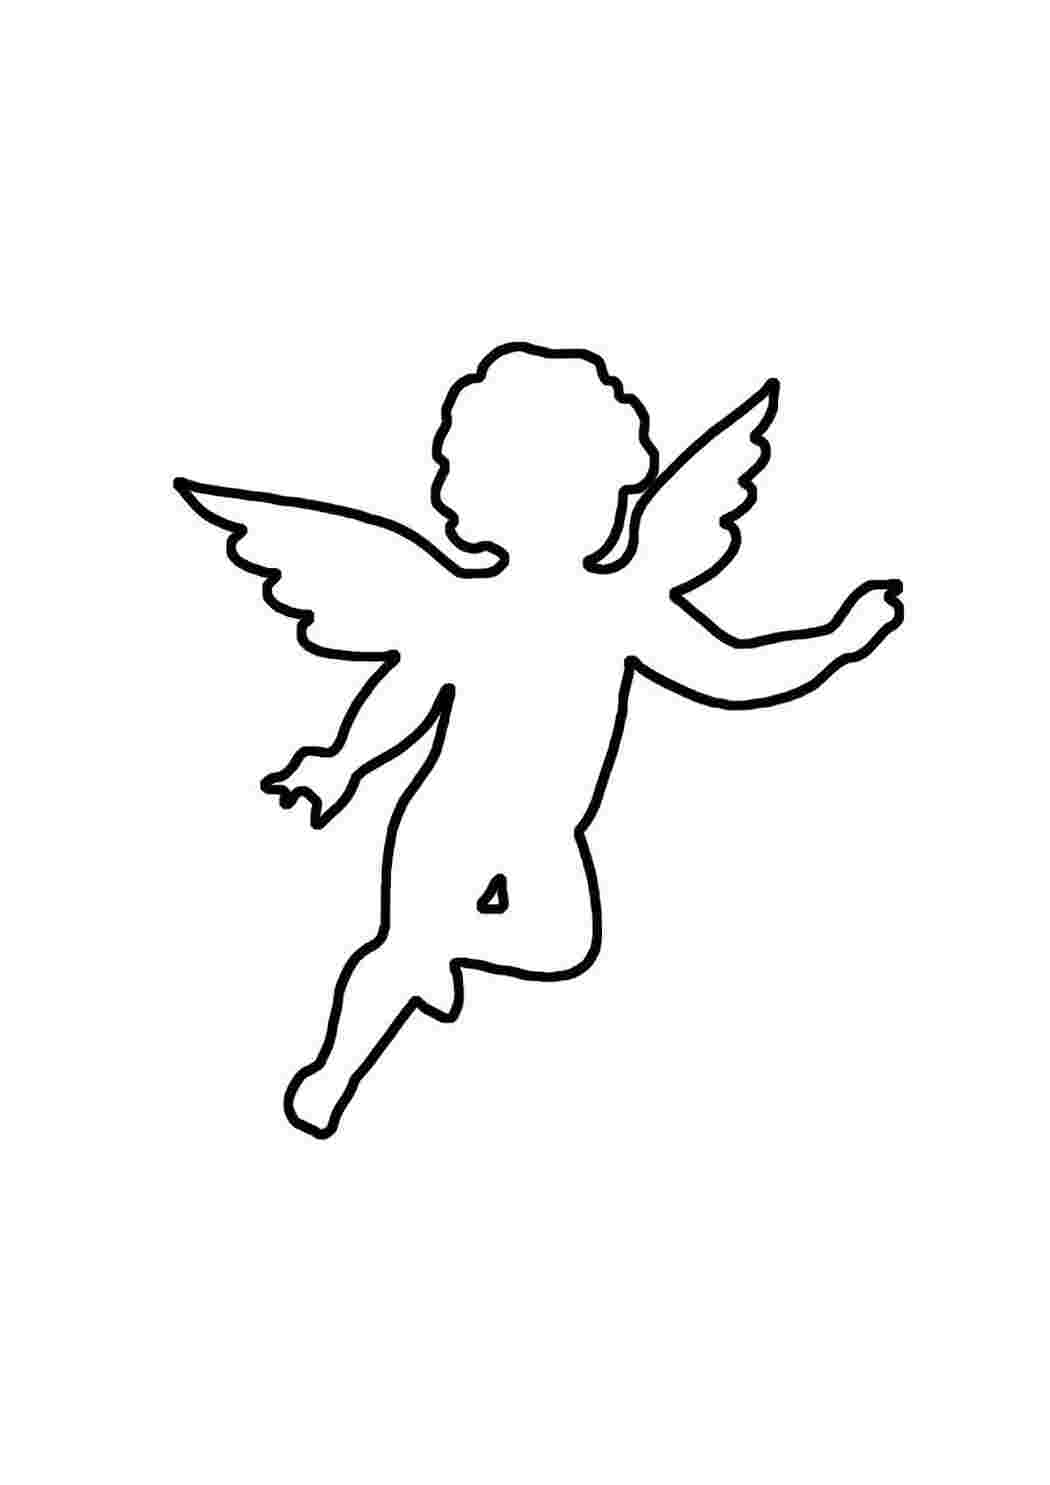 Ангел из бумаги своими руками: шаблон